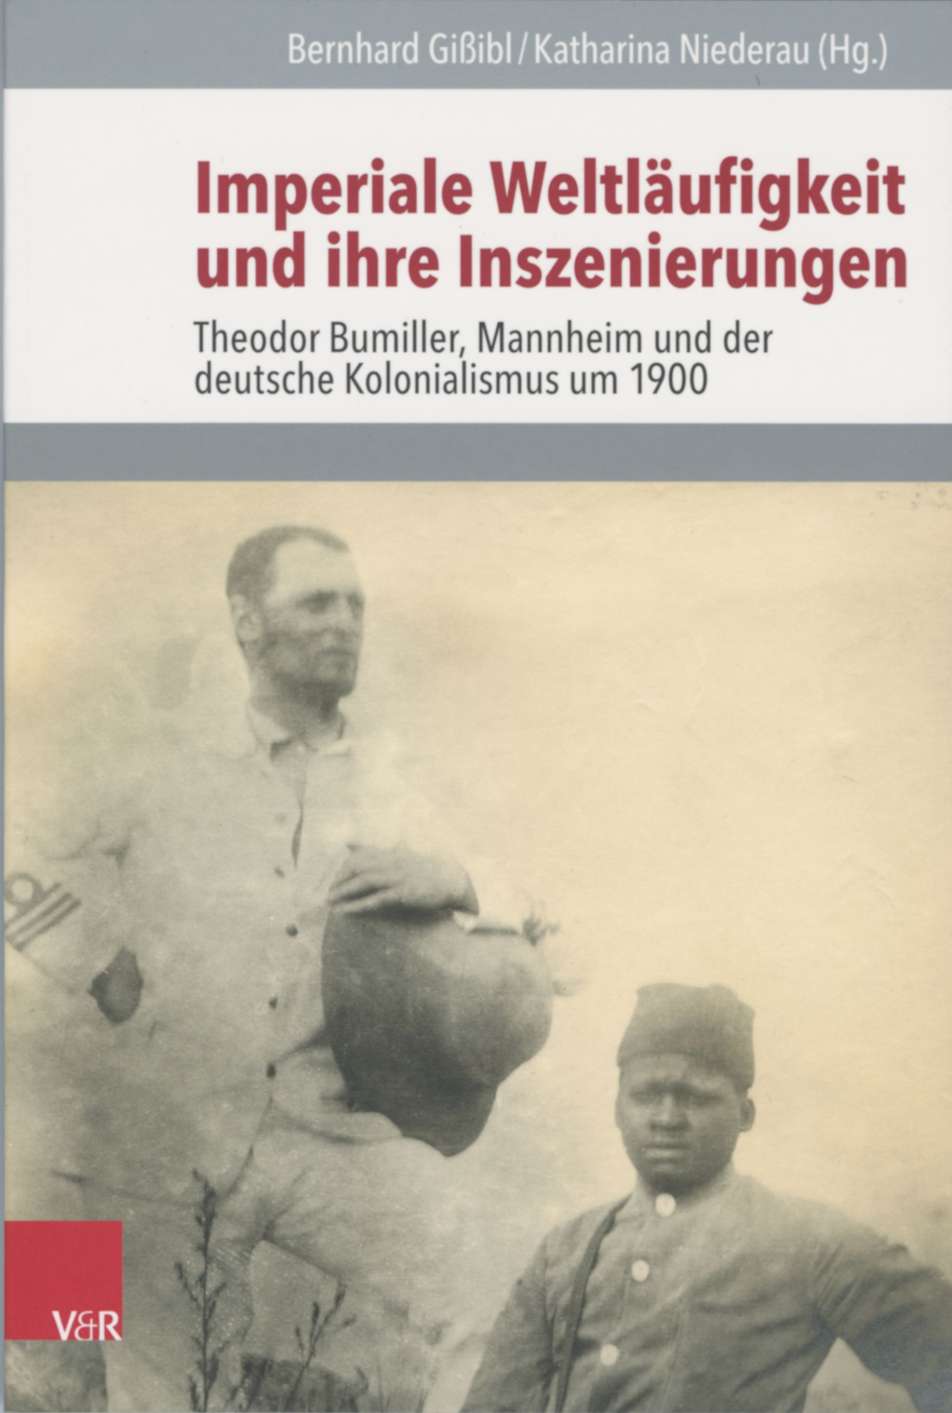 farbiges Cover des Buches "Imperiale Weltläufigkeit und ihre Inszenierungen"